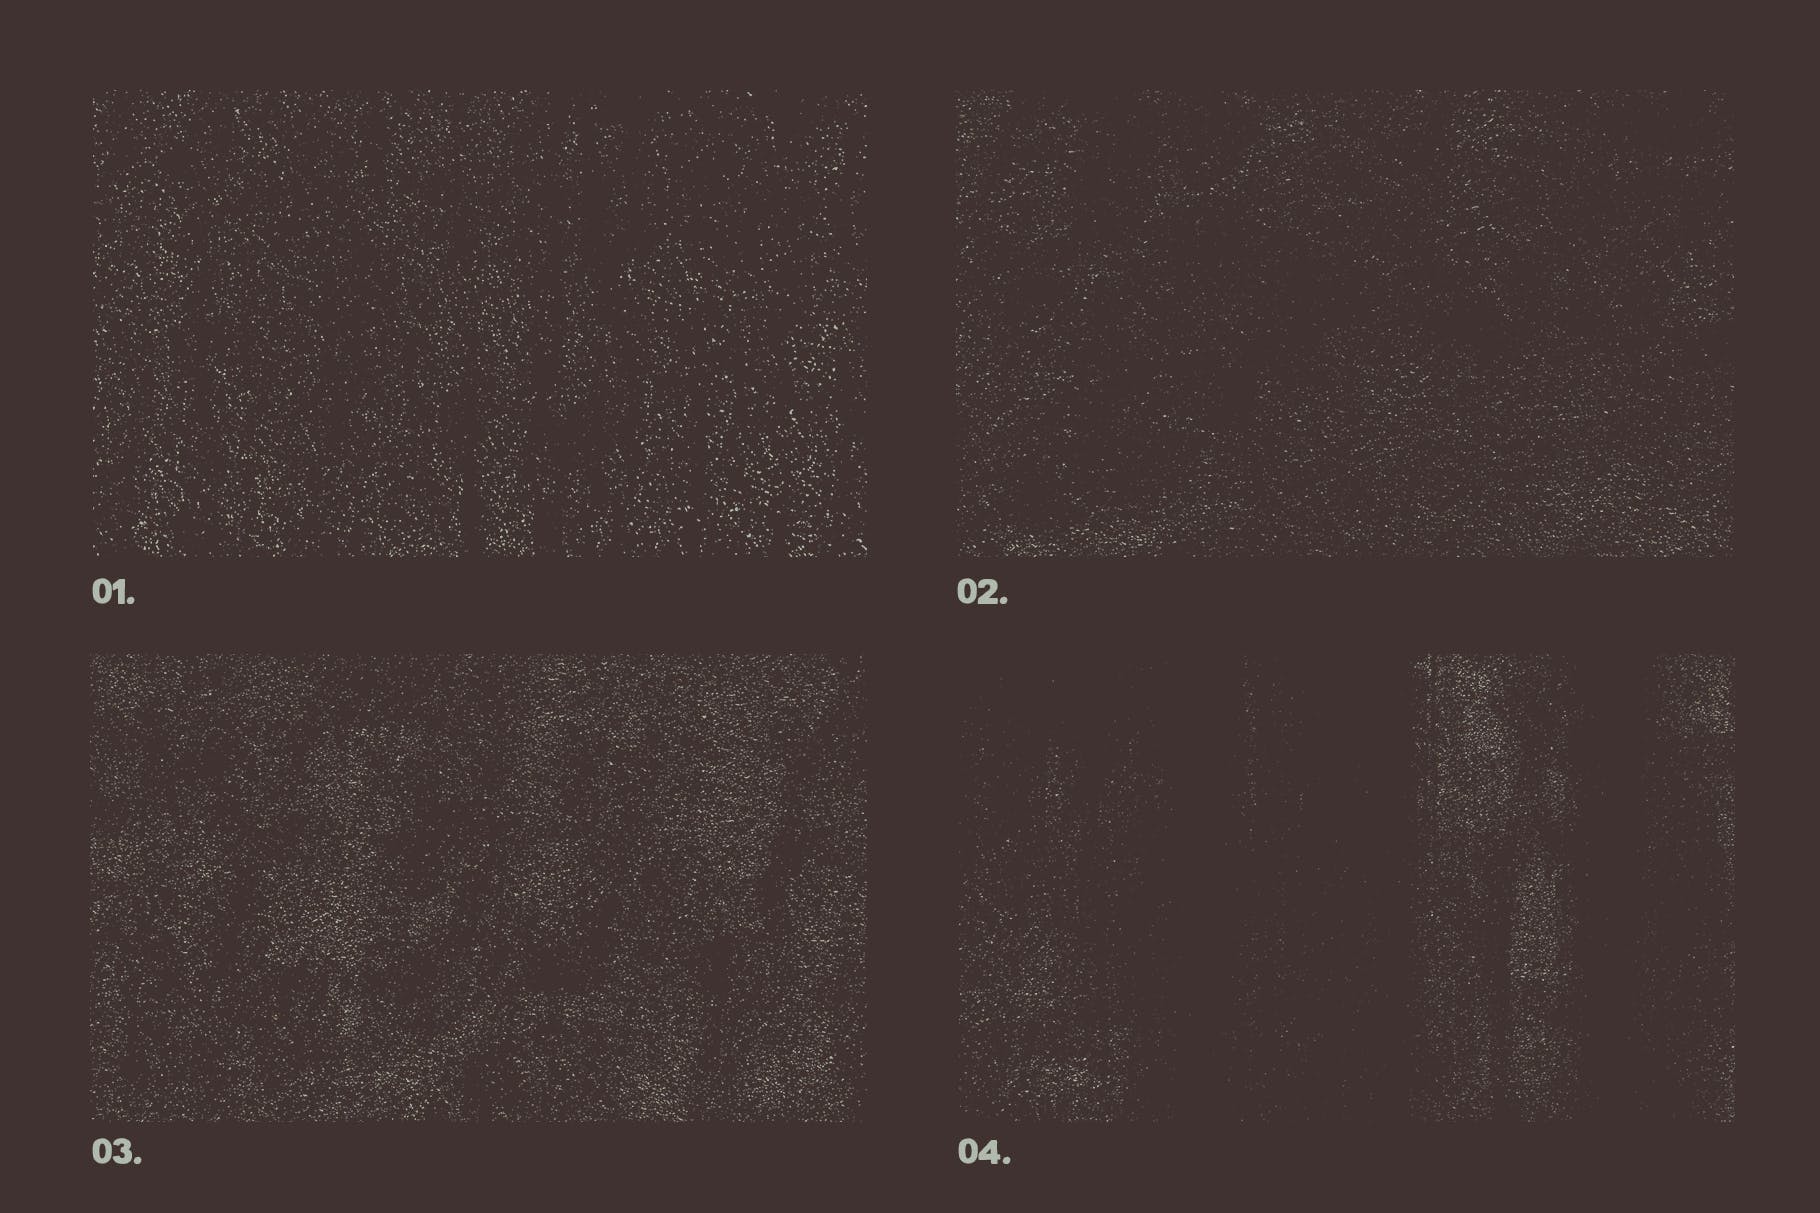 12个粒状磨砂效果矢量纹理背景素材 Vector Grainy Textures x12插图2